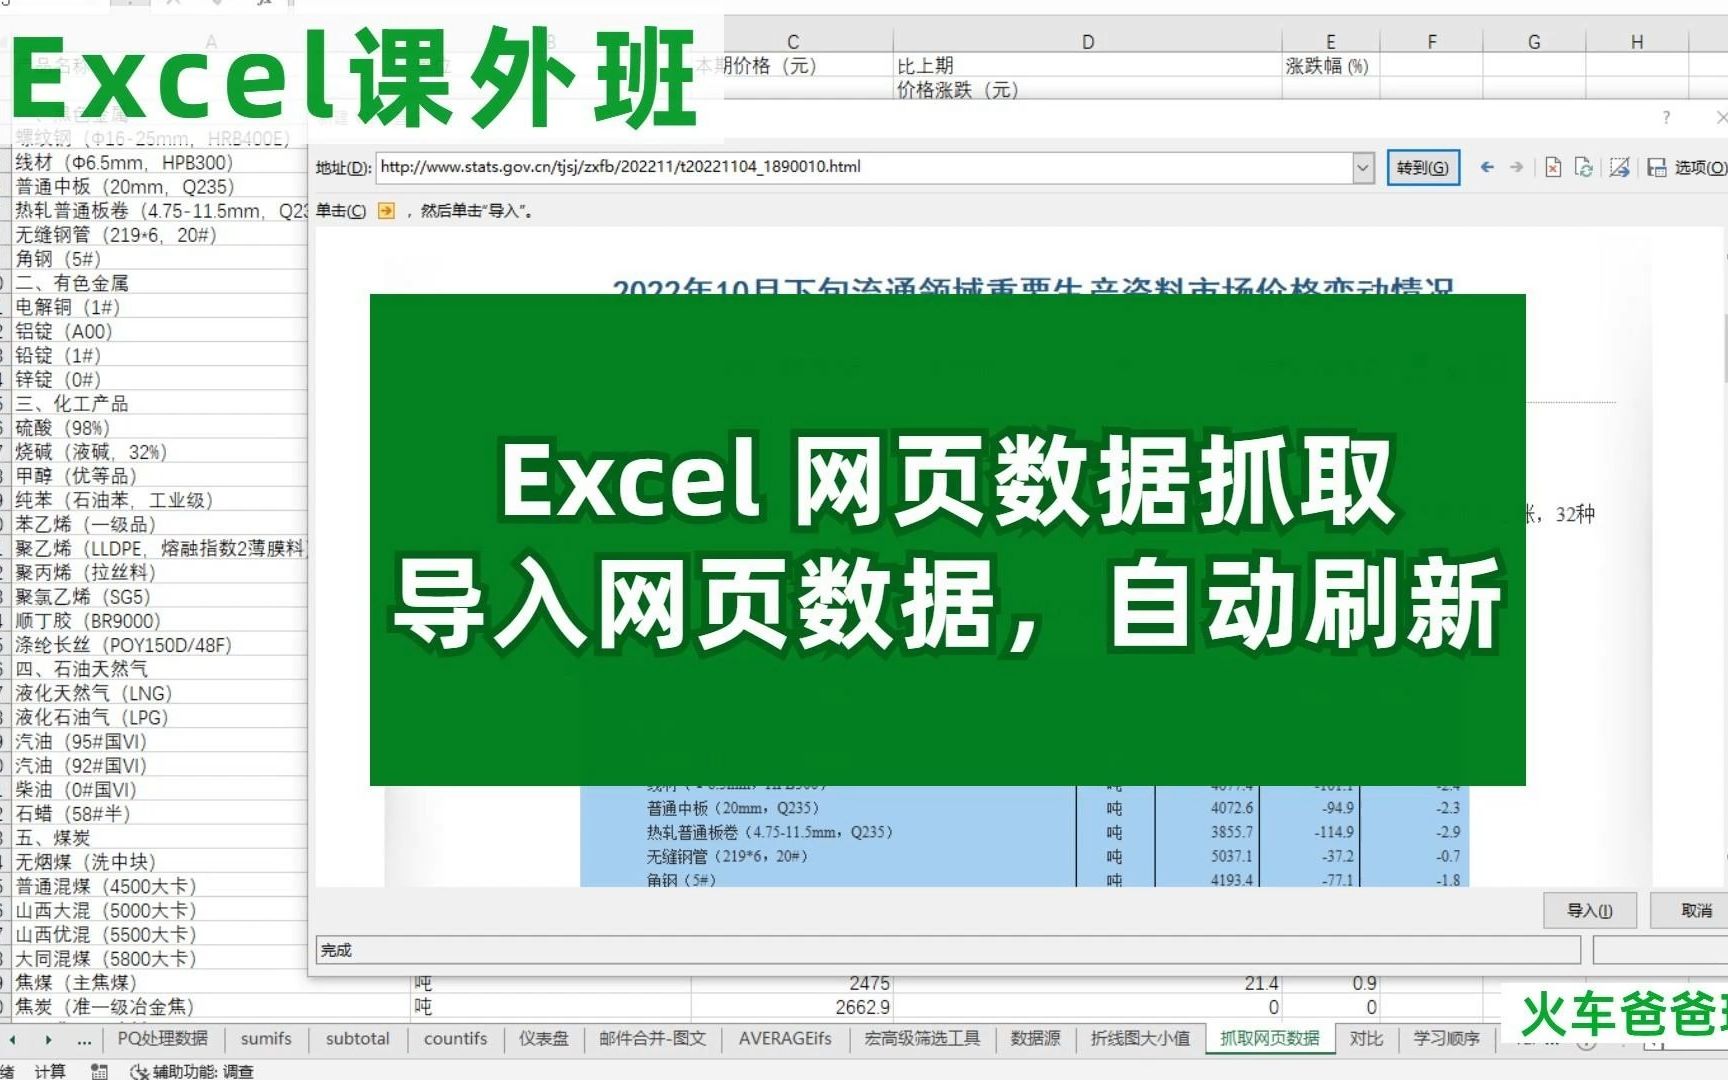 Excel，获取网页数据，导入并自动更新，避免手动复制粘贴